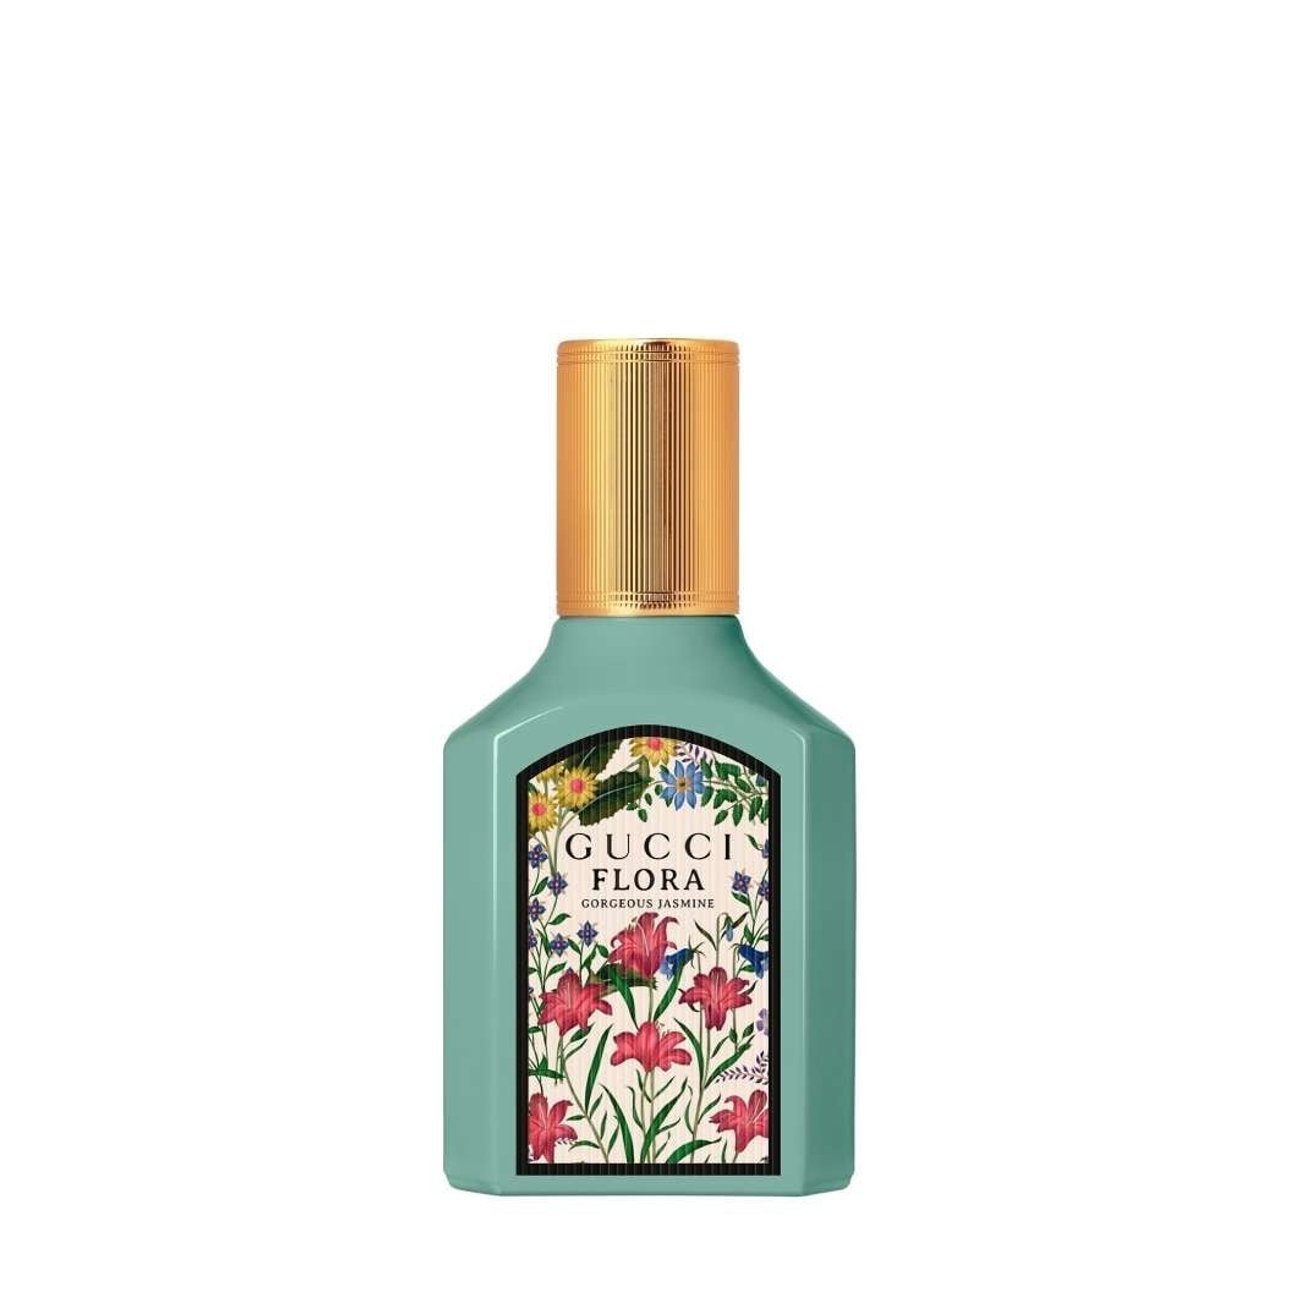 Flora by Gucci Gorgeous Jasmine Eau de Parfum